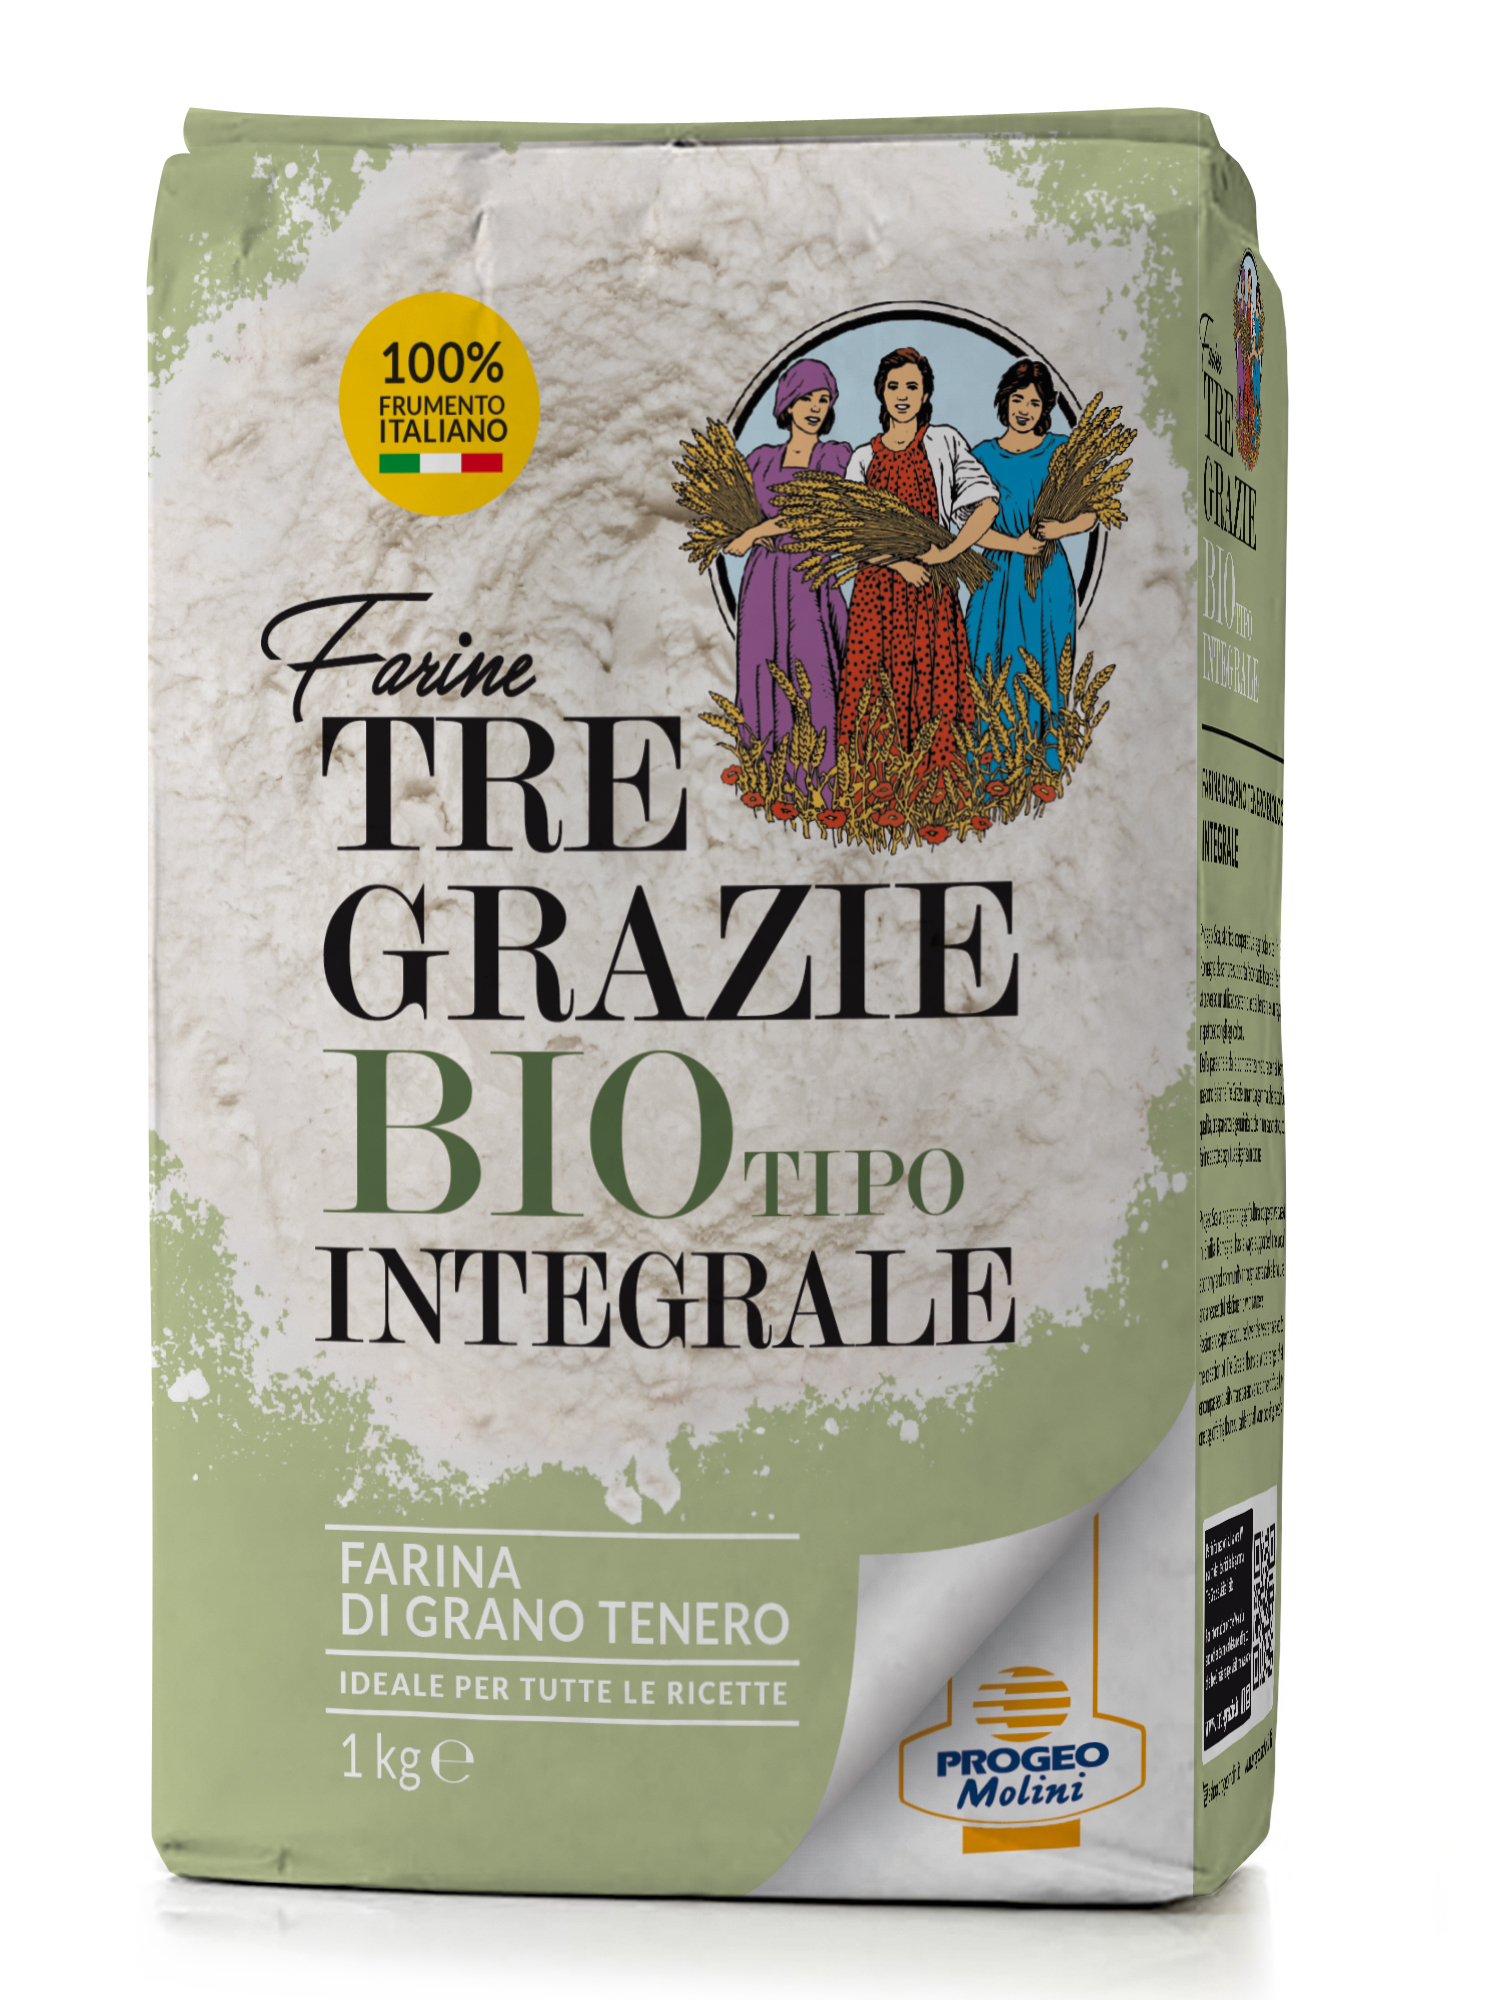 Integrale- 100% Frumento Italiano